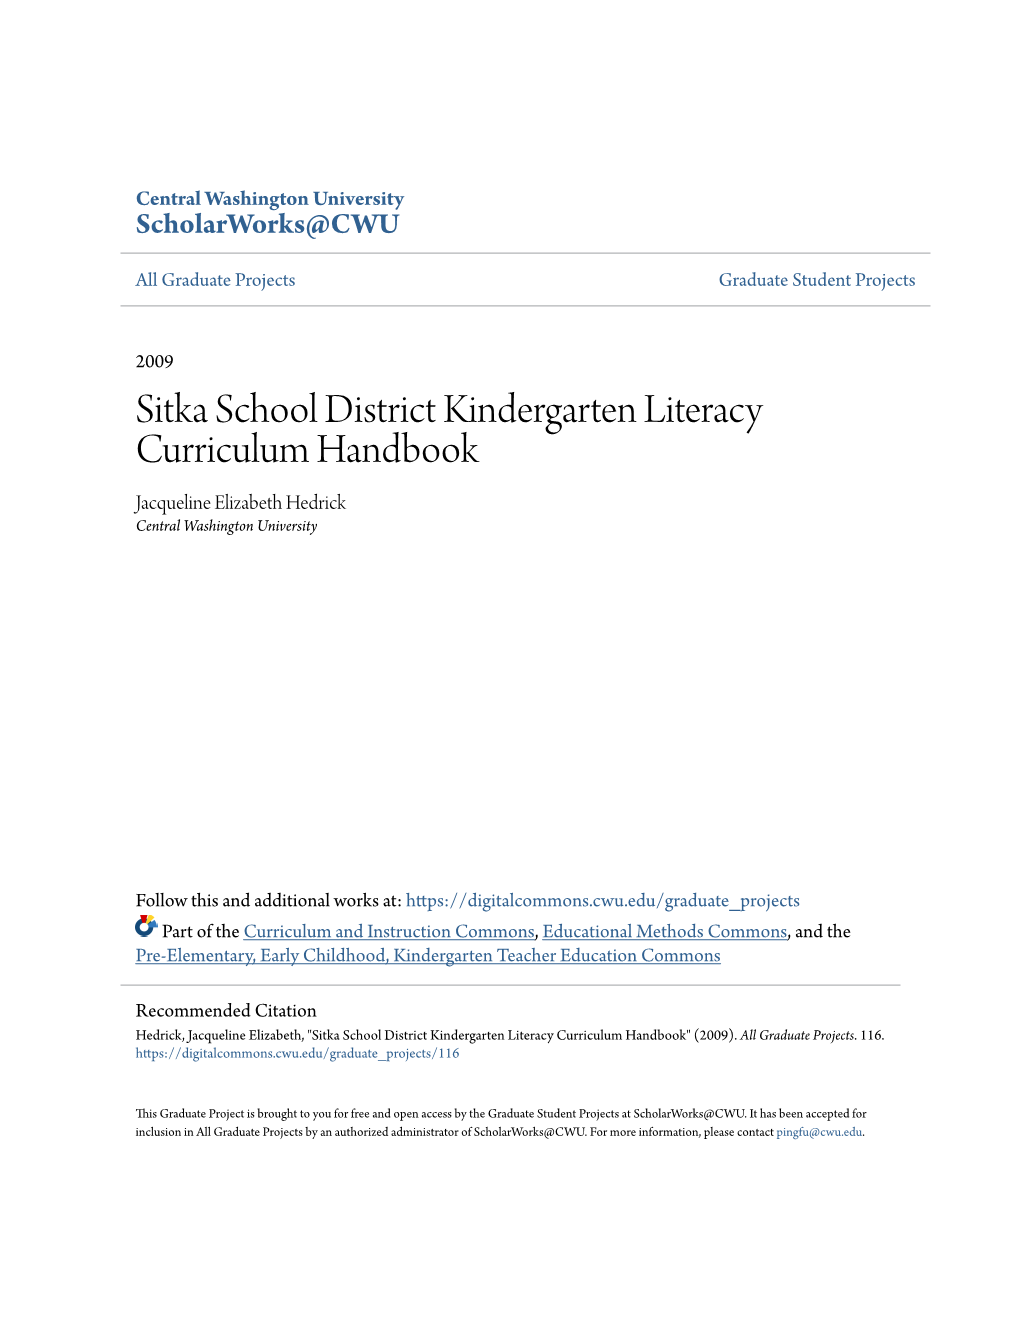 Sitka School District Kindergarten Literacy Curriculum Handbook Jacqueline Elizabeth Hedrick Central Washington University